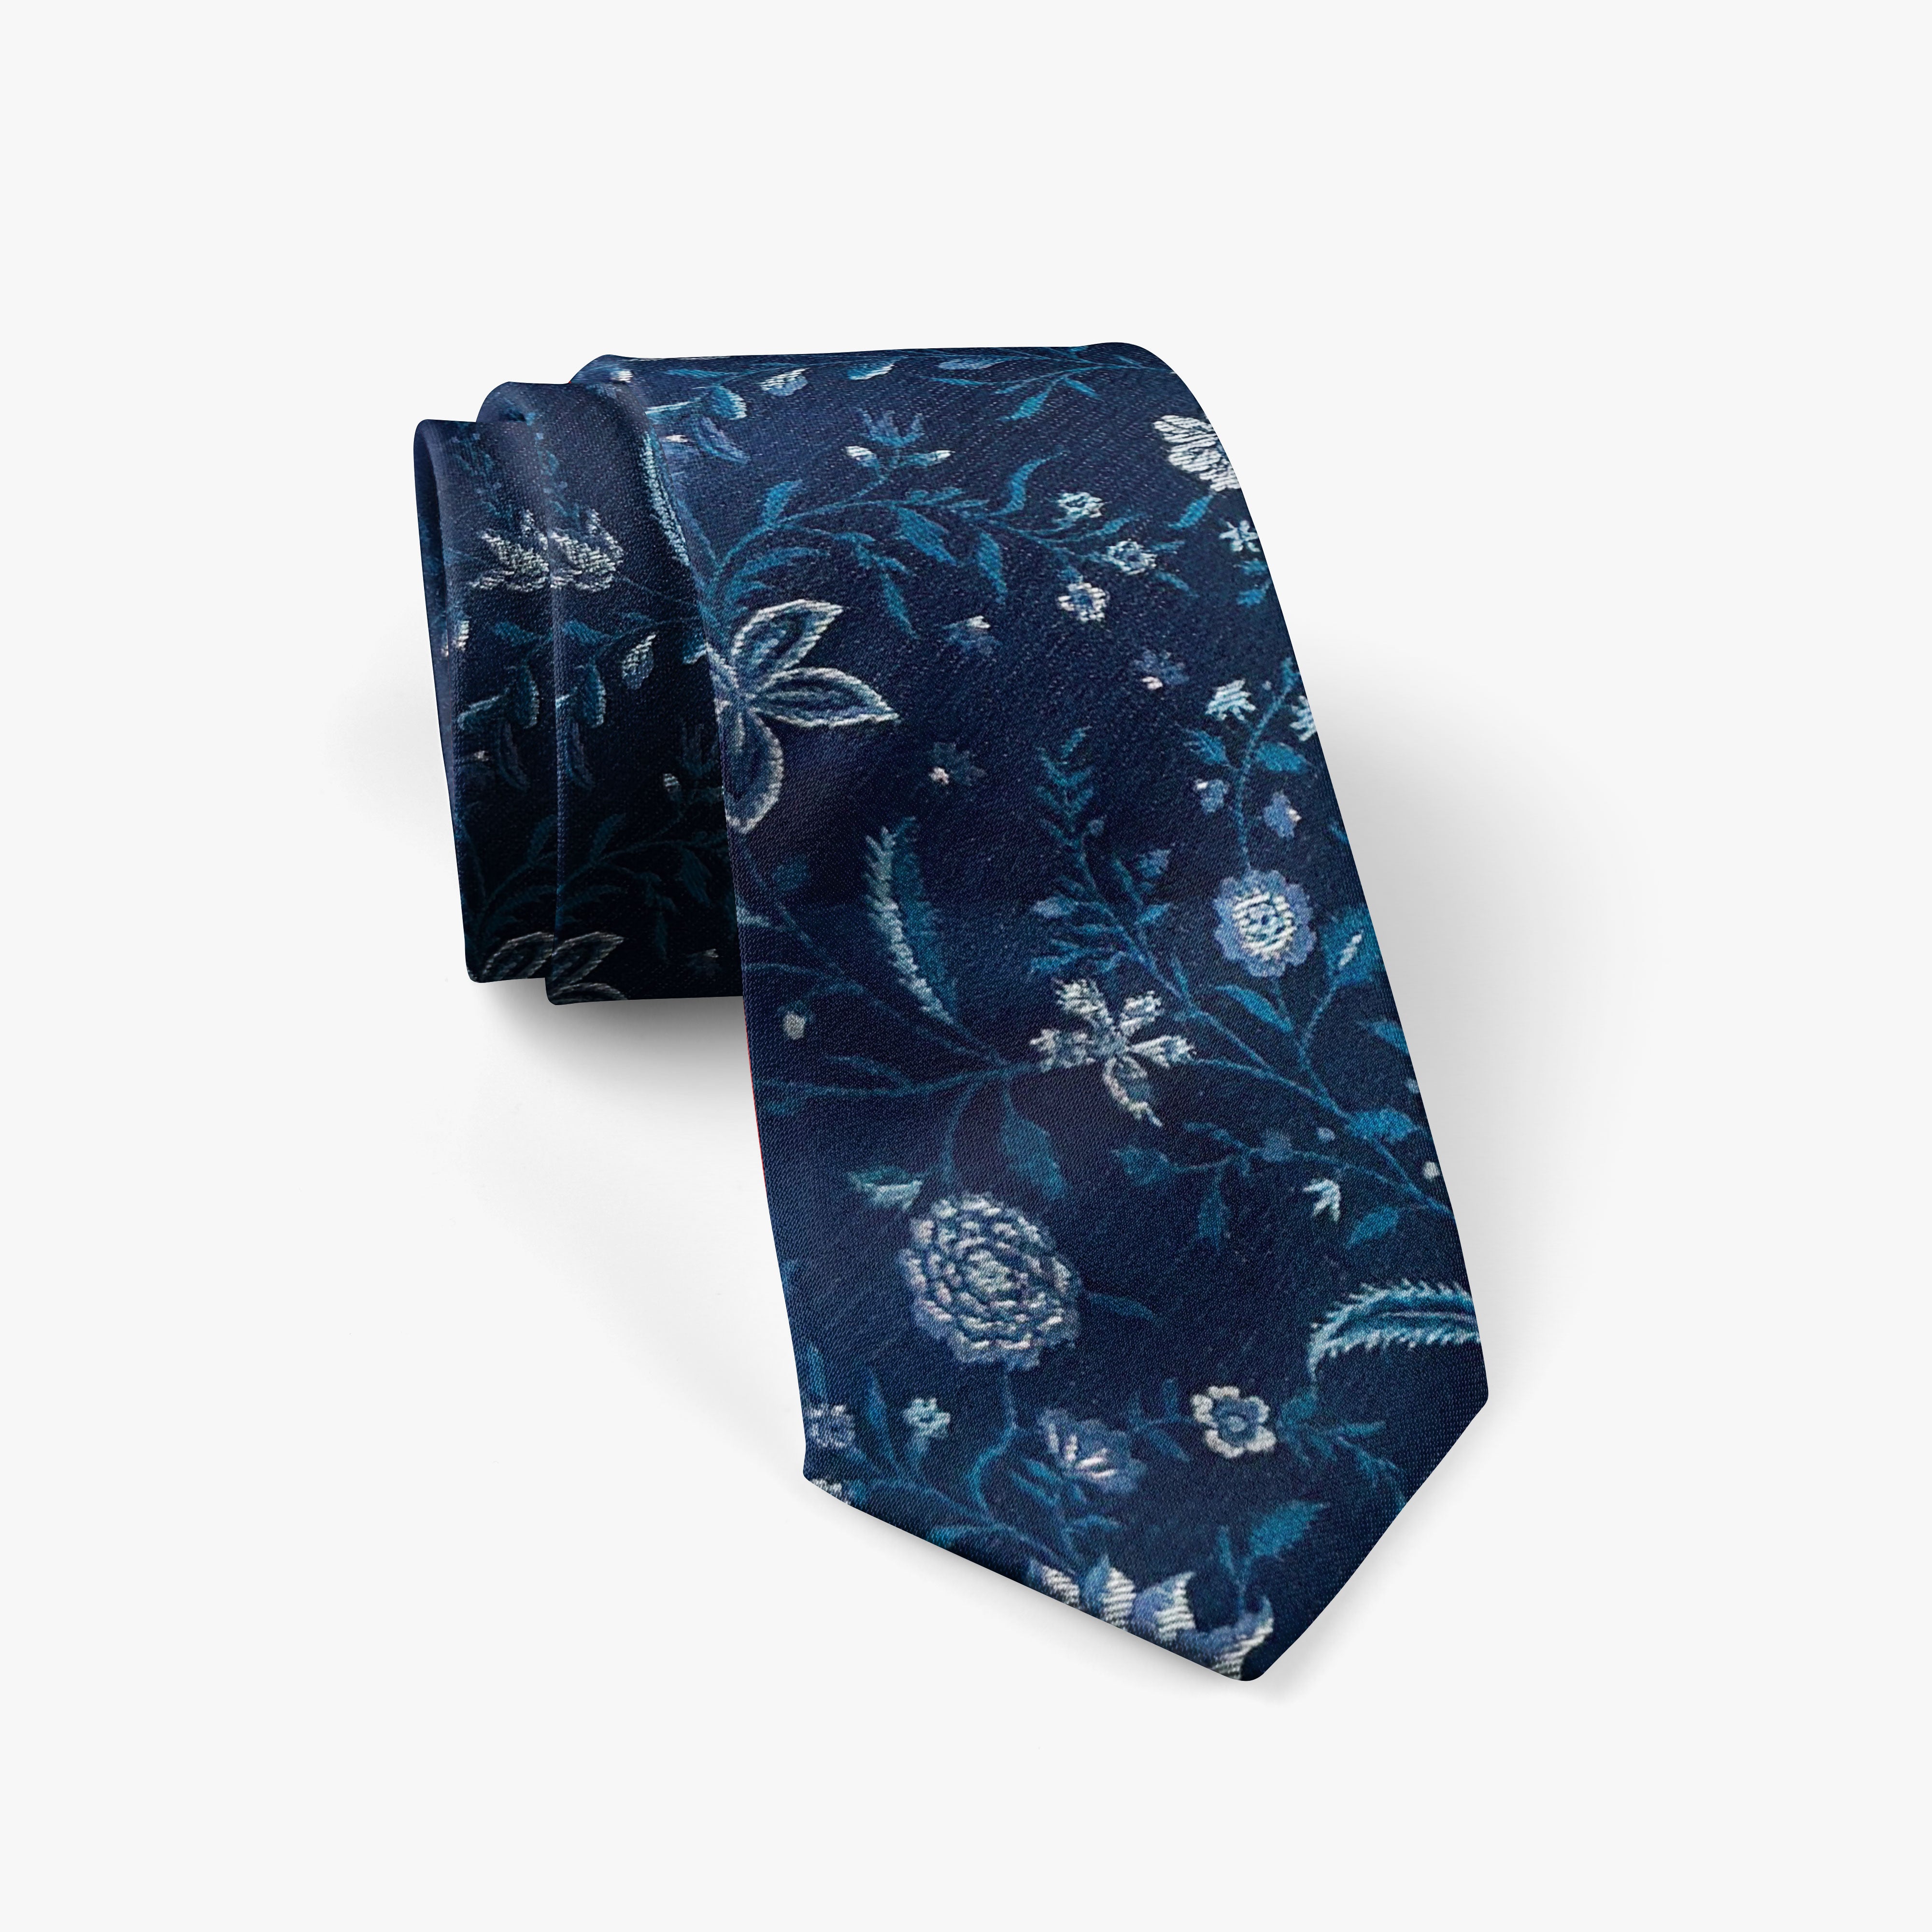 Navy & Teal Floral Necktie